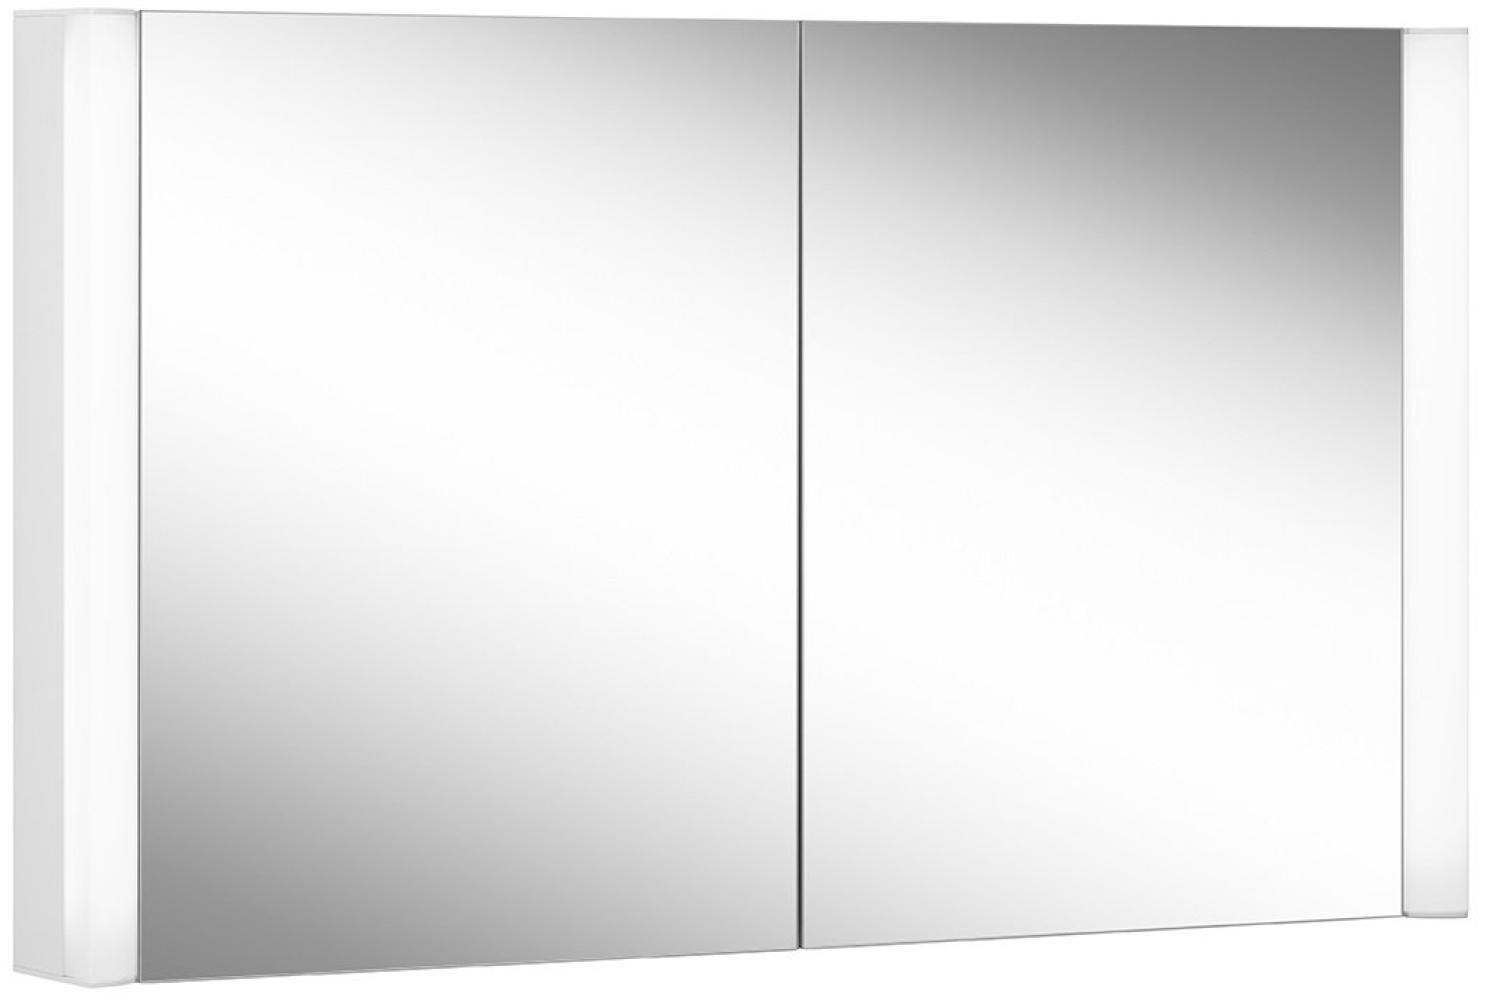 Schneider EASY Line Superior LED Lichtspiegelschrank, 2 Doppelspiegeltüren, 120x70x14cm, 175. 120, Ausführung: EU-Norm/Korpus weiss/3000K - 175. 120. 02. 0201 Bild 1